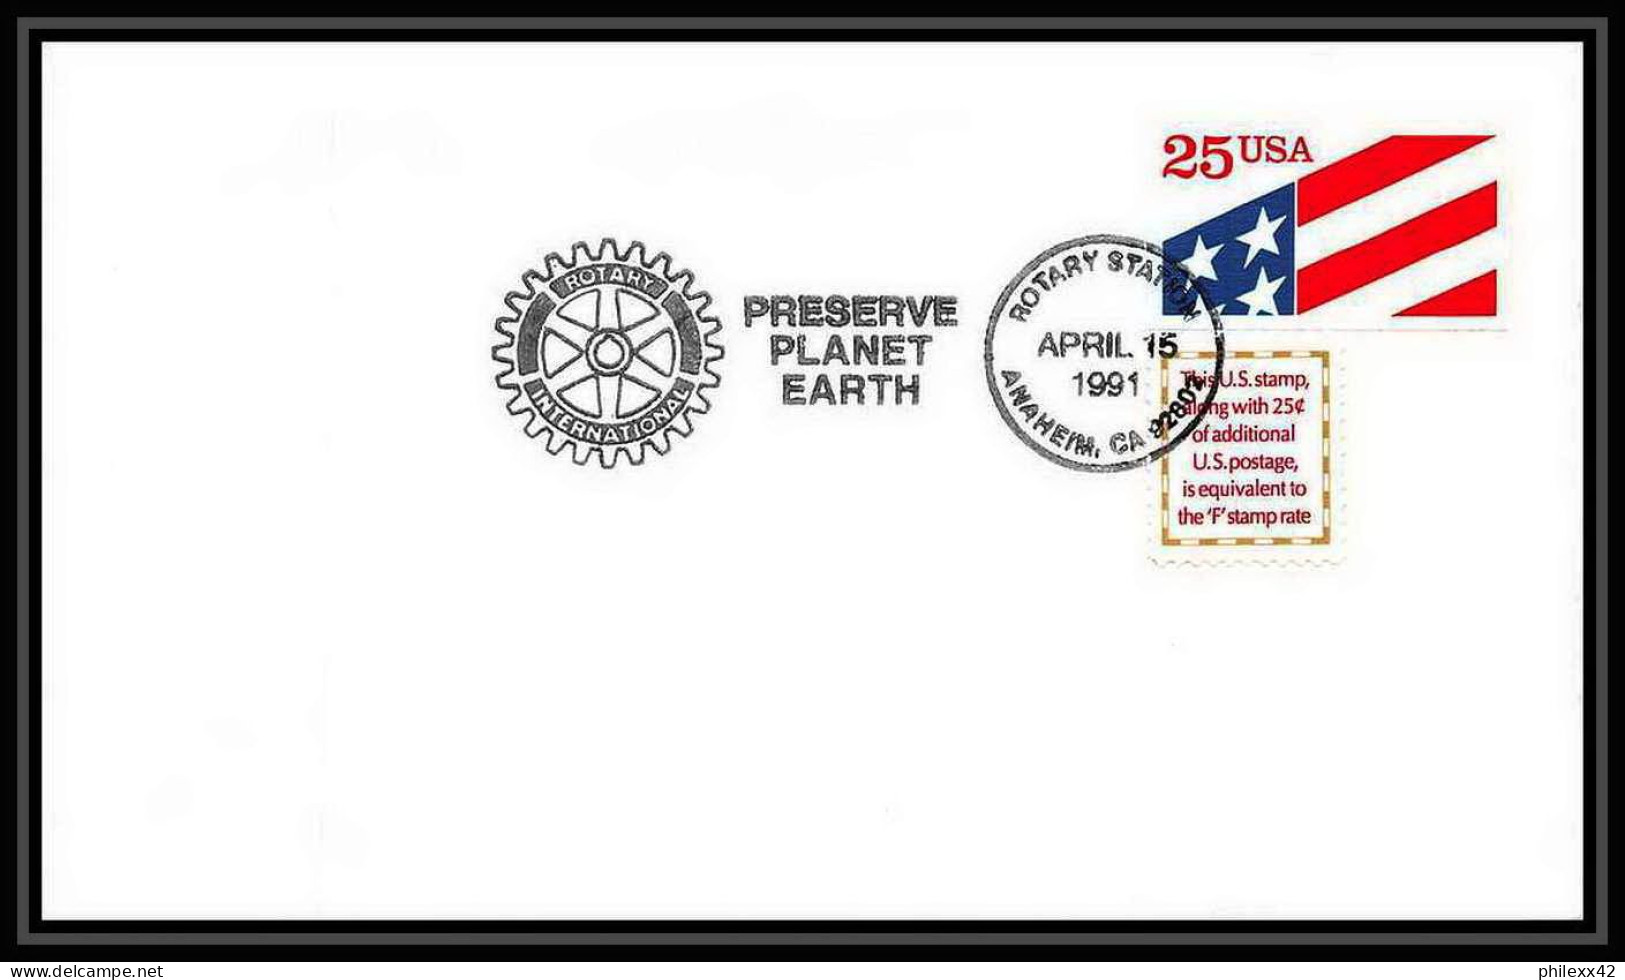 10511/ Espace (space Raumfahrt) Lettre (cover Briefe) 15/4/1991 Rotary Preserve Planet Earth USA - Estados Unidos